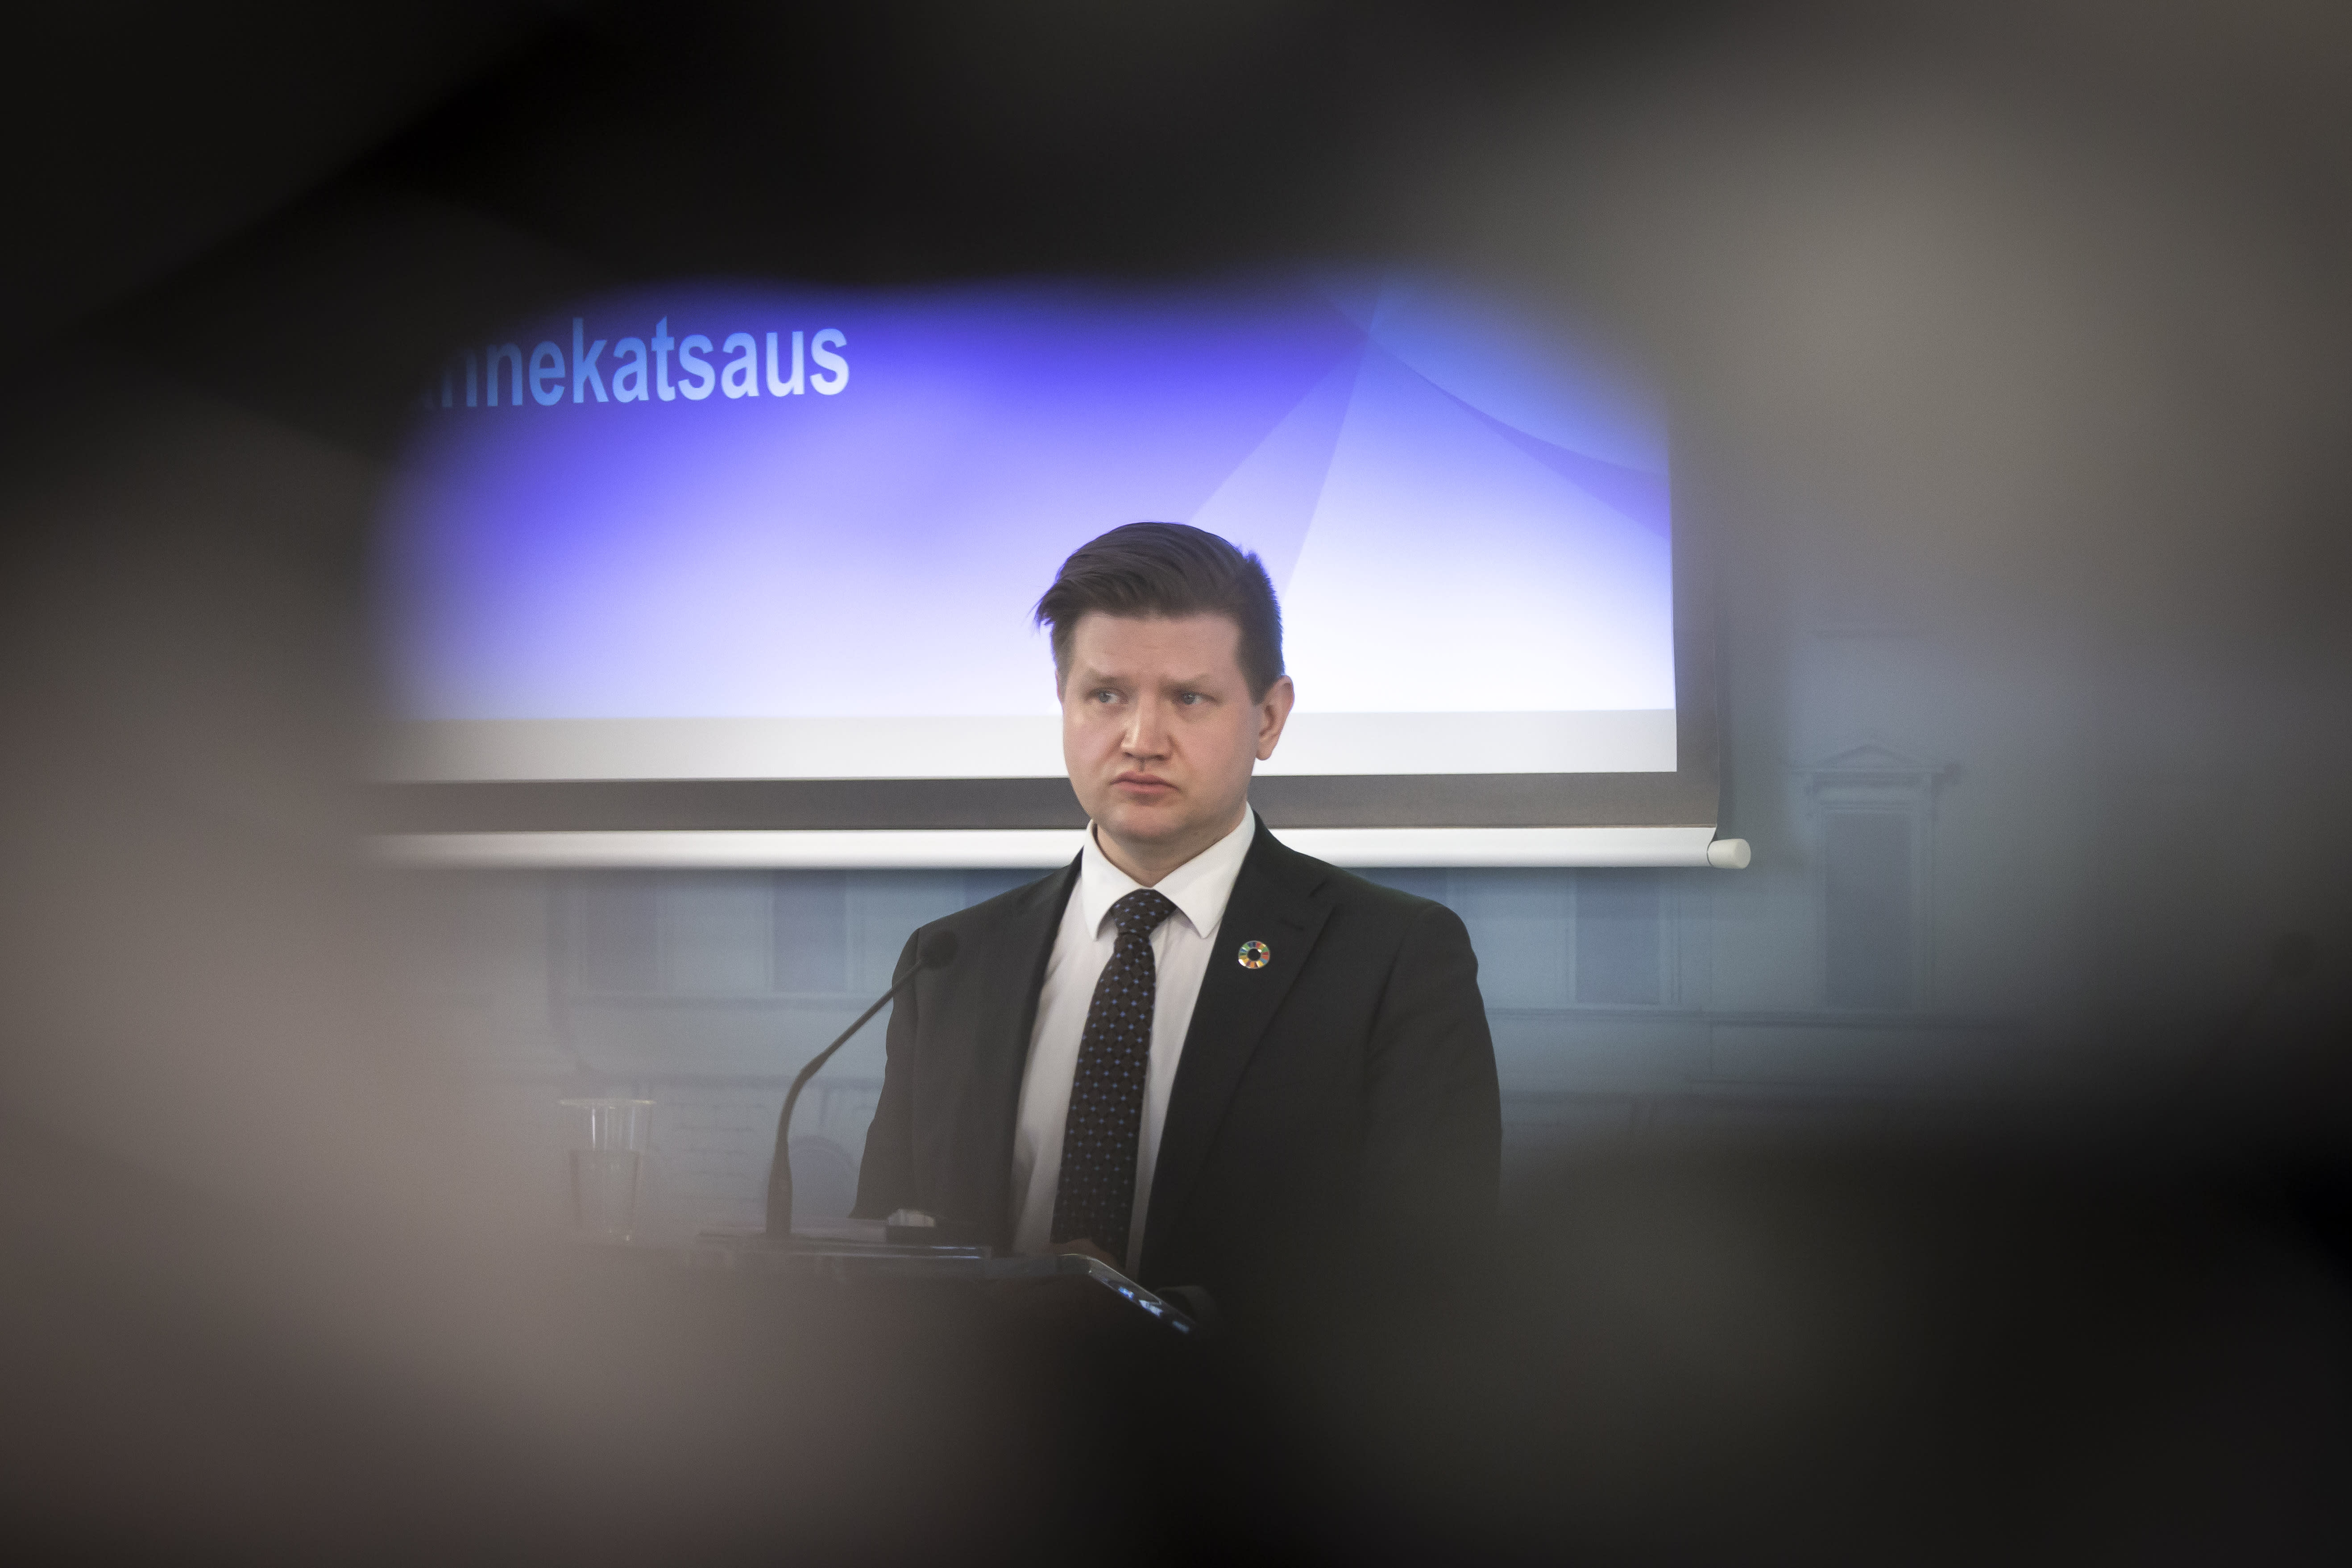 Prime Minister Marini’s Secretary of State Koskinen resigns